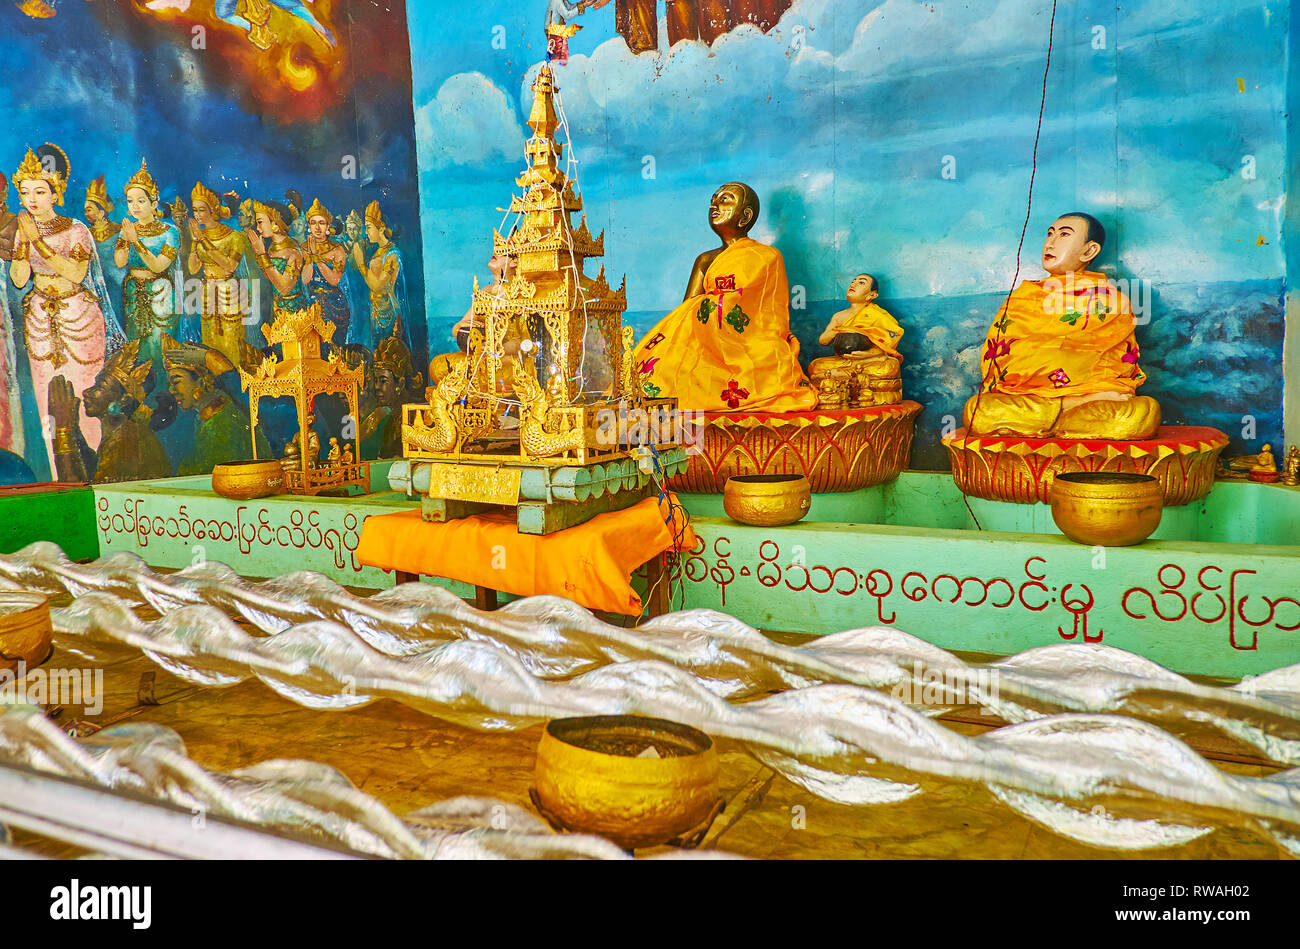 BAGO, MYANMAR - Februar 15, 2018: Die szenische Installation in Shwemawdaw Pagode Pavillon - Die stürmische Gewässer vor Buddha Bilder, am 15. Februar Stockfoto